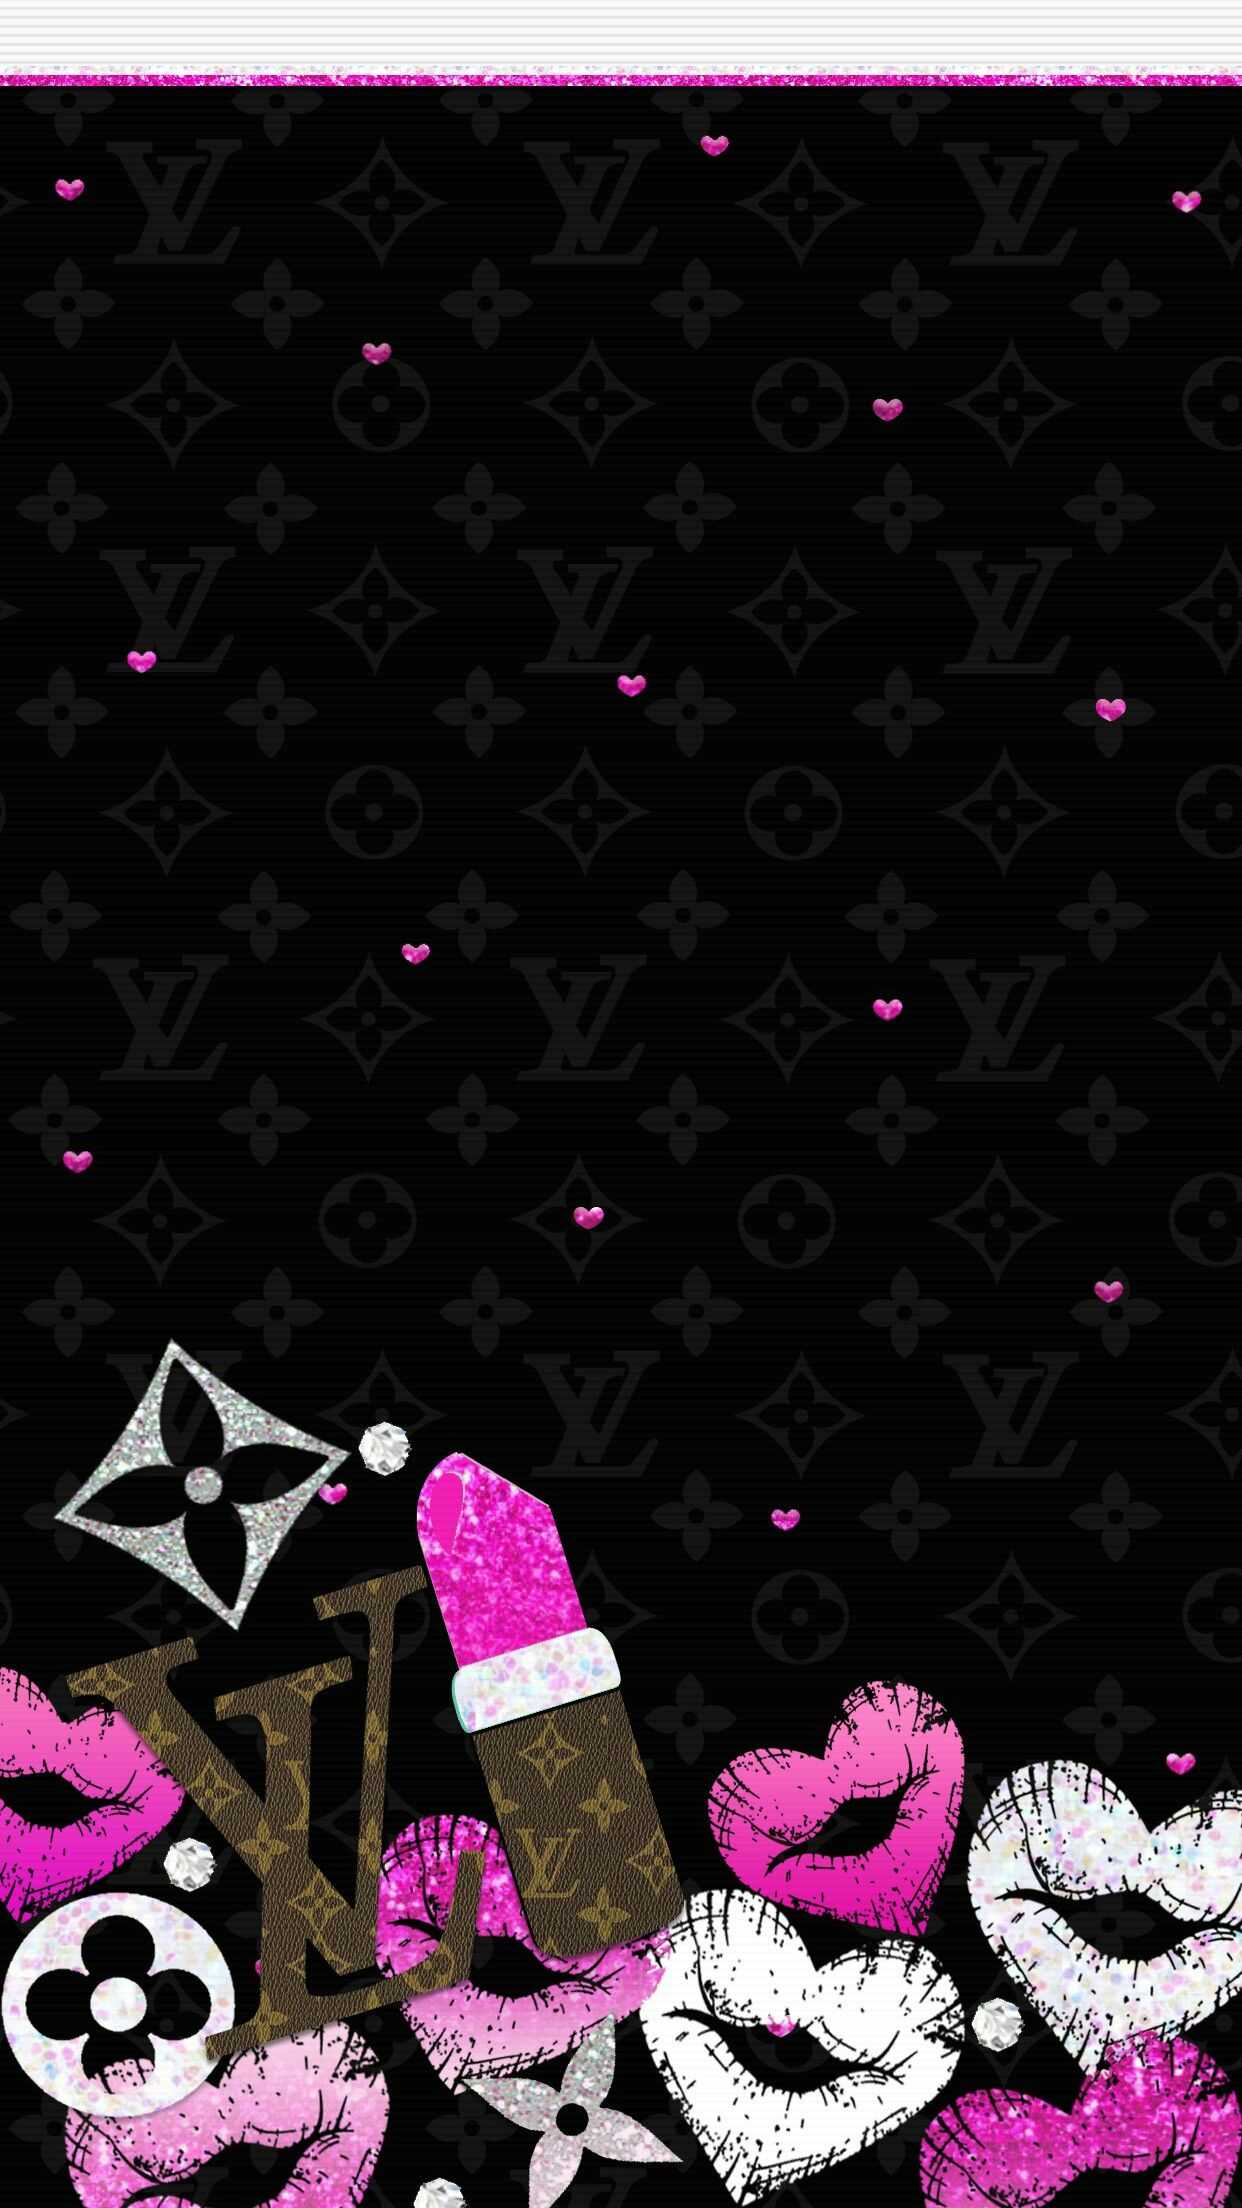 Download Louis Vuitton Pink Glitter Wallpaper